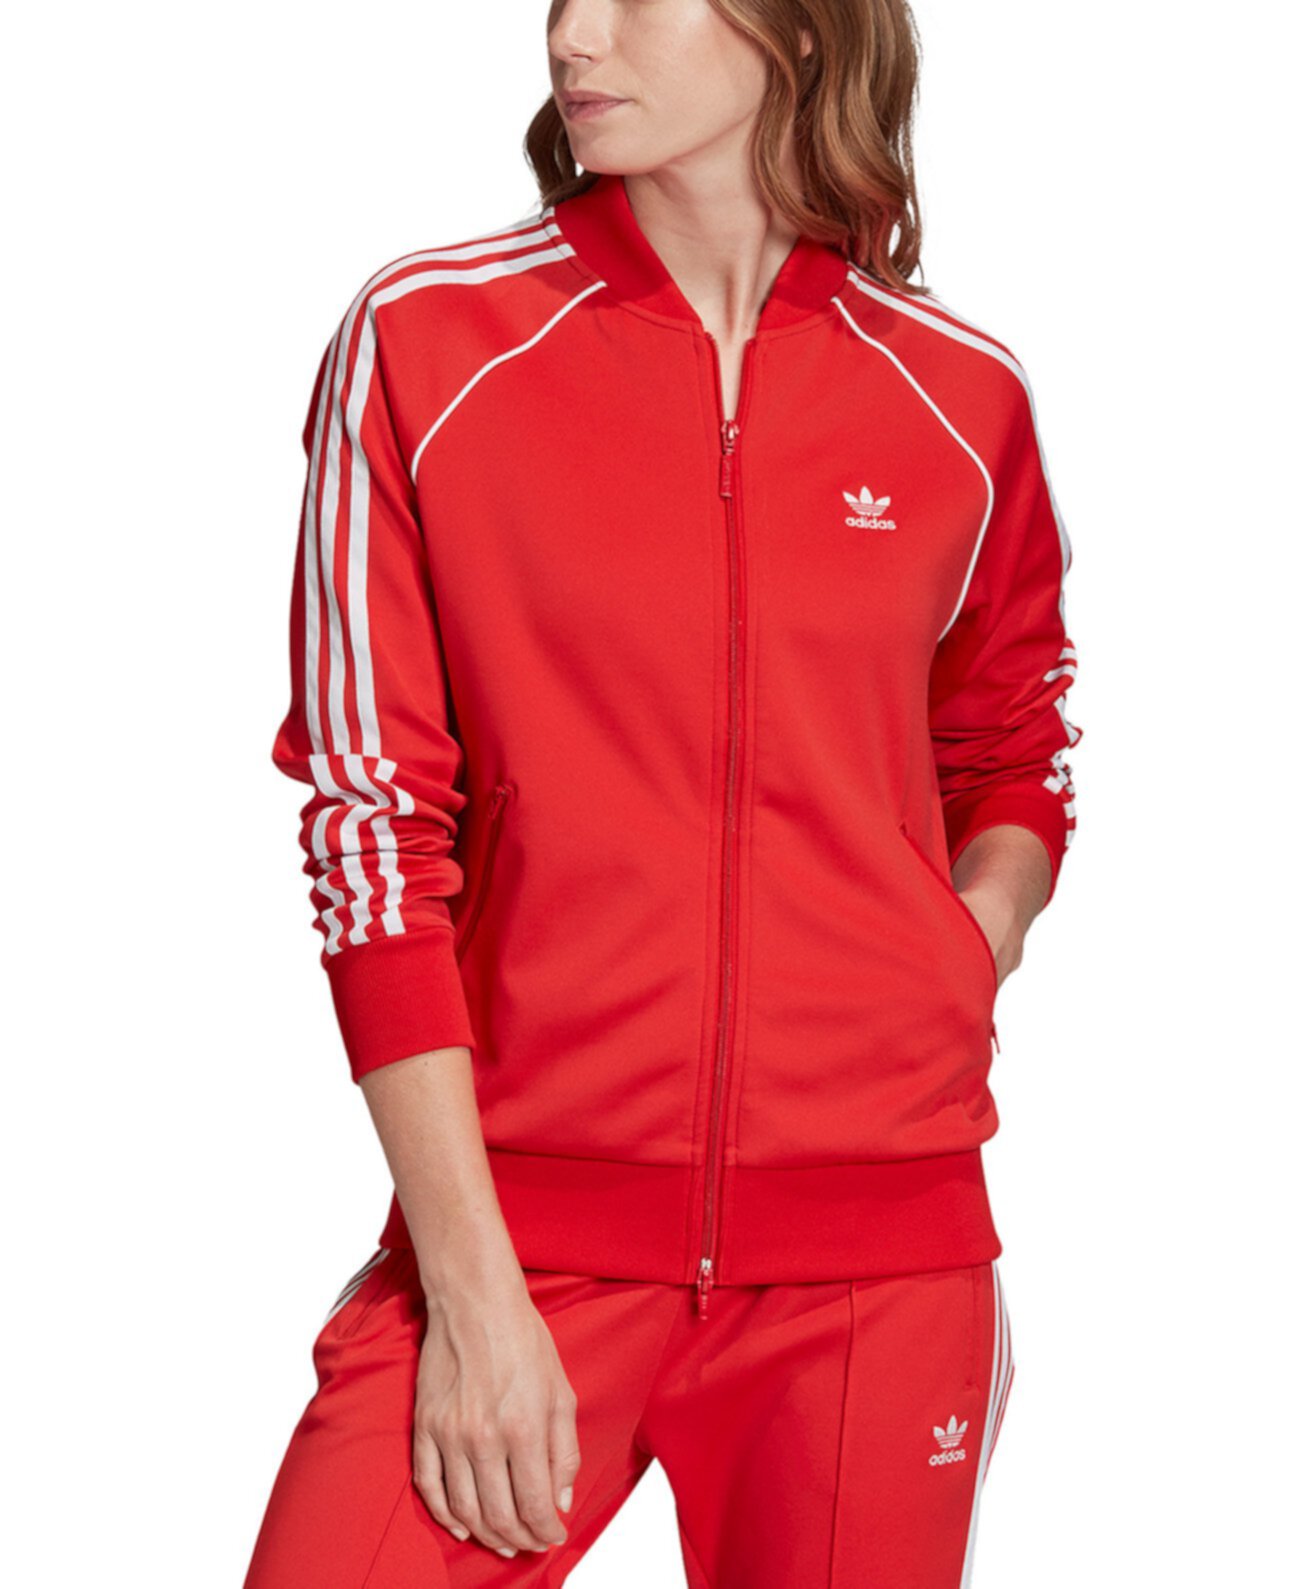 Спортивный костюм адидас цены. Адидас красная олимпийка adidas. Олимпийка адидас женская красная. Олимпийка женская адидас ориджинал красная. Красный костюм адидас ориджинал.